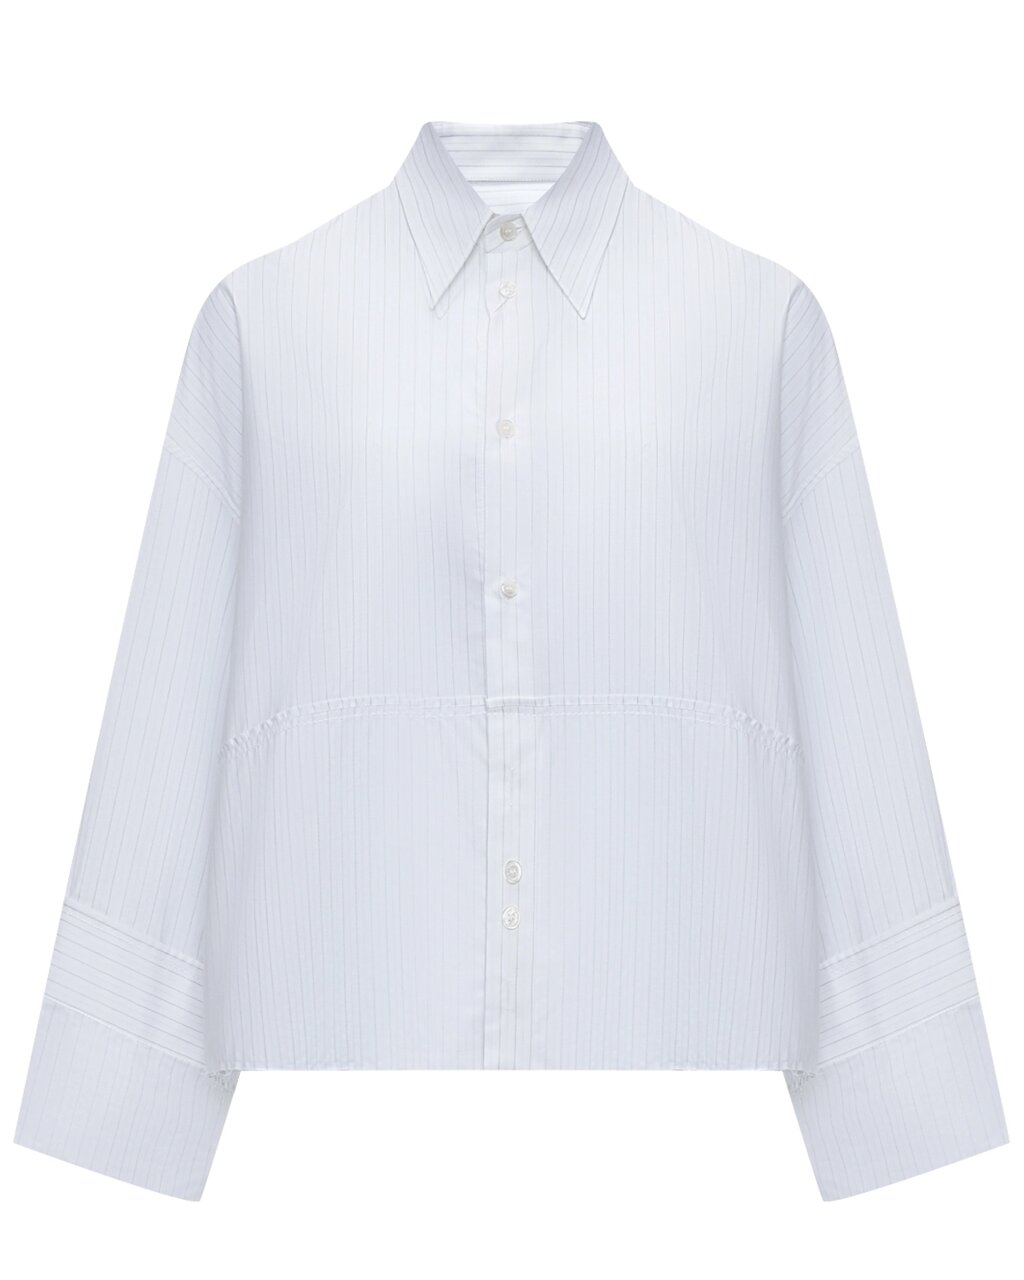 Укороченная белая рубашка MM6 Maison Margiela от компании Admi - фото 1